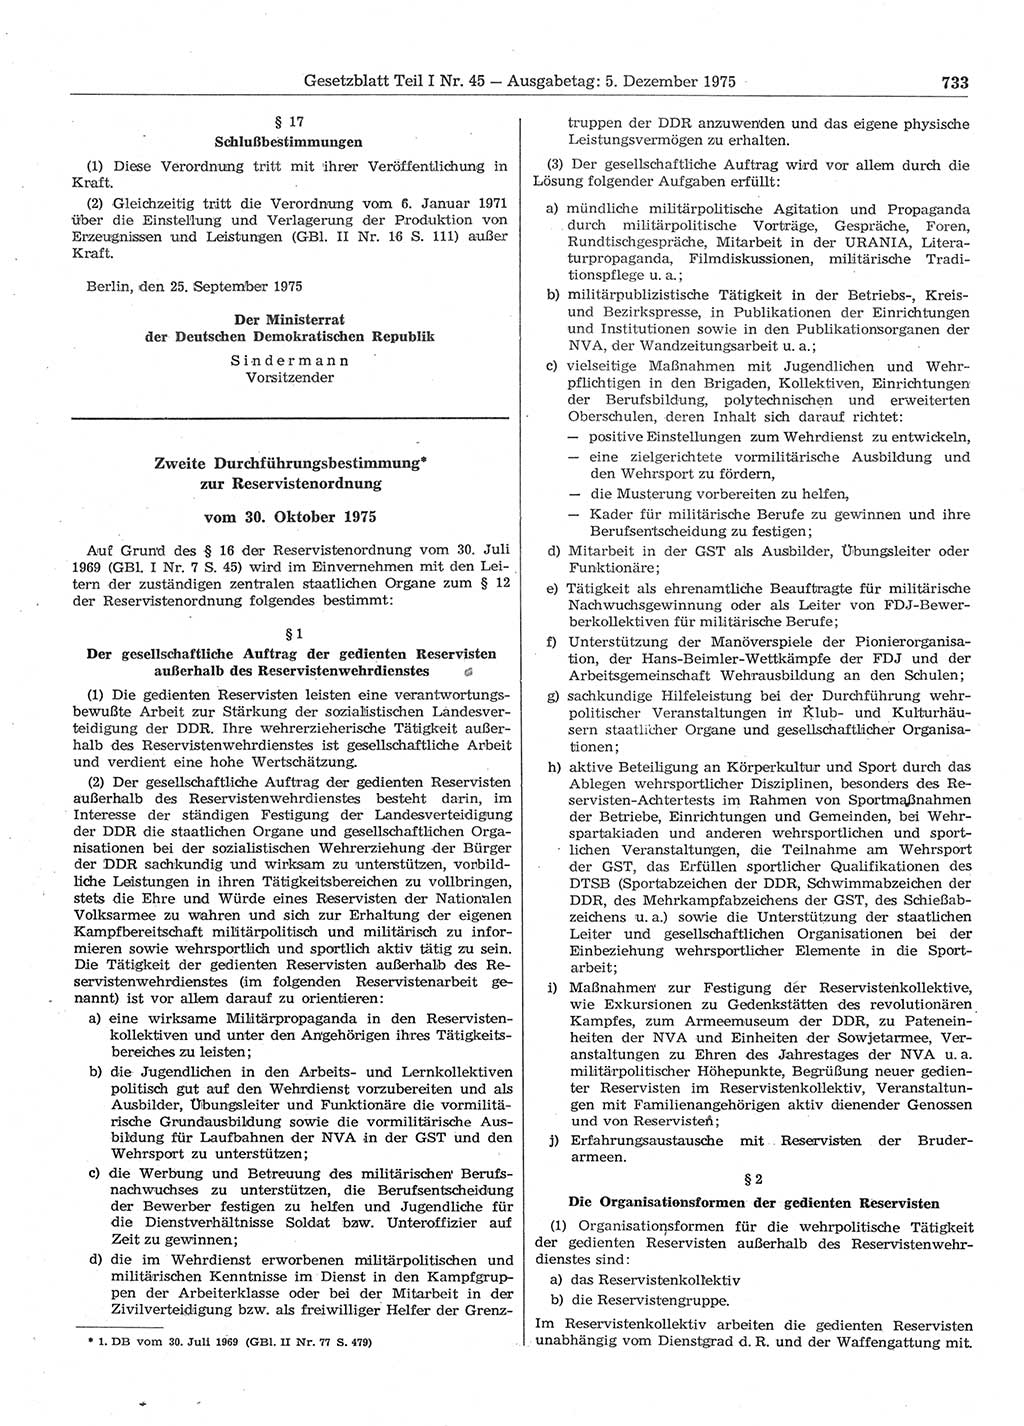 Gesetzblatt (GBl.) der Deutschen Demokratischen Republik (DDR) Teil Ⅰ 1975, Seite 733 (GBl. DDR Ⅰ 1975, S. 733)